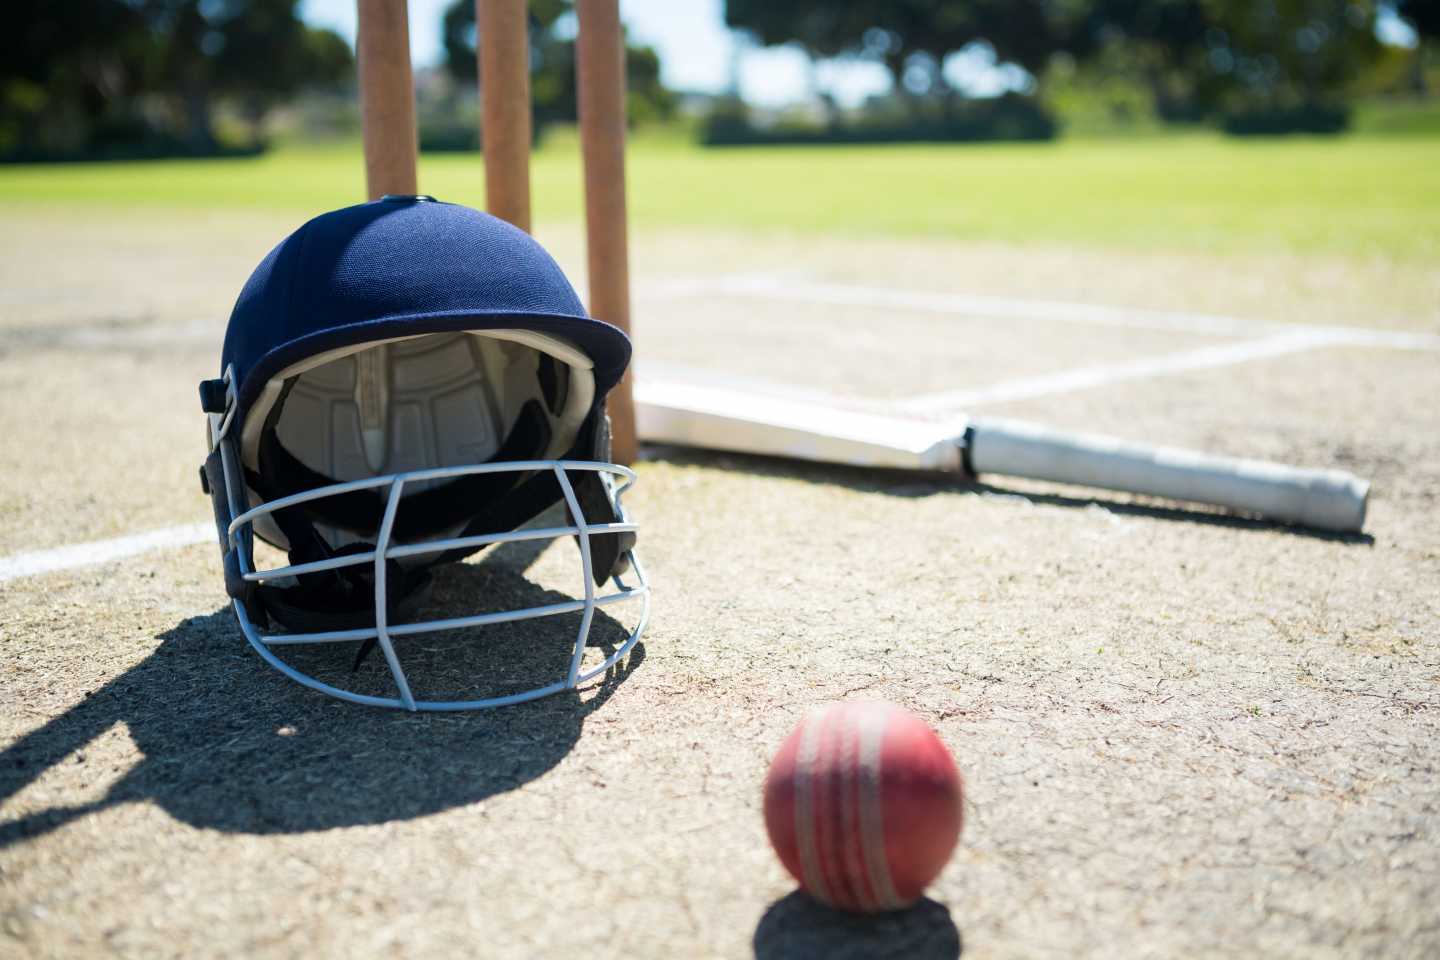 På en cricket bana ligger en crickethjälm, boll och cricketträ.